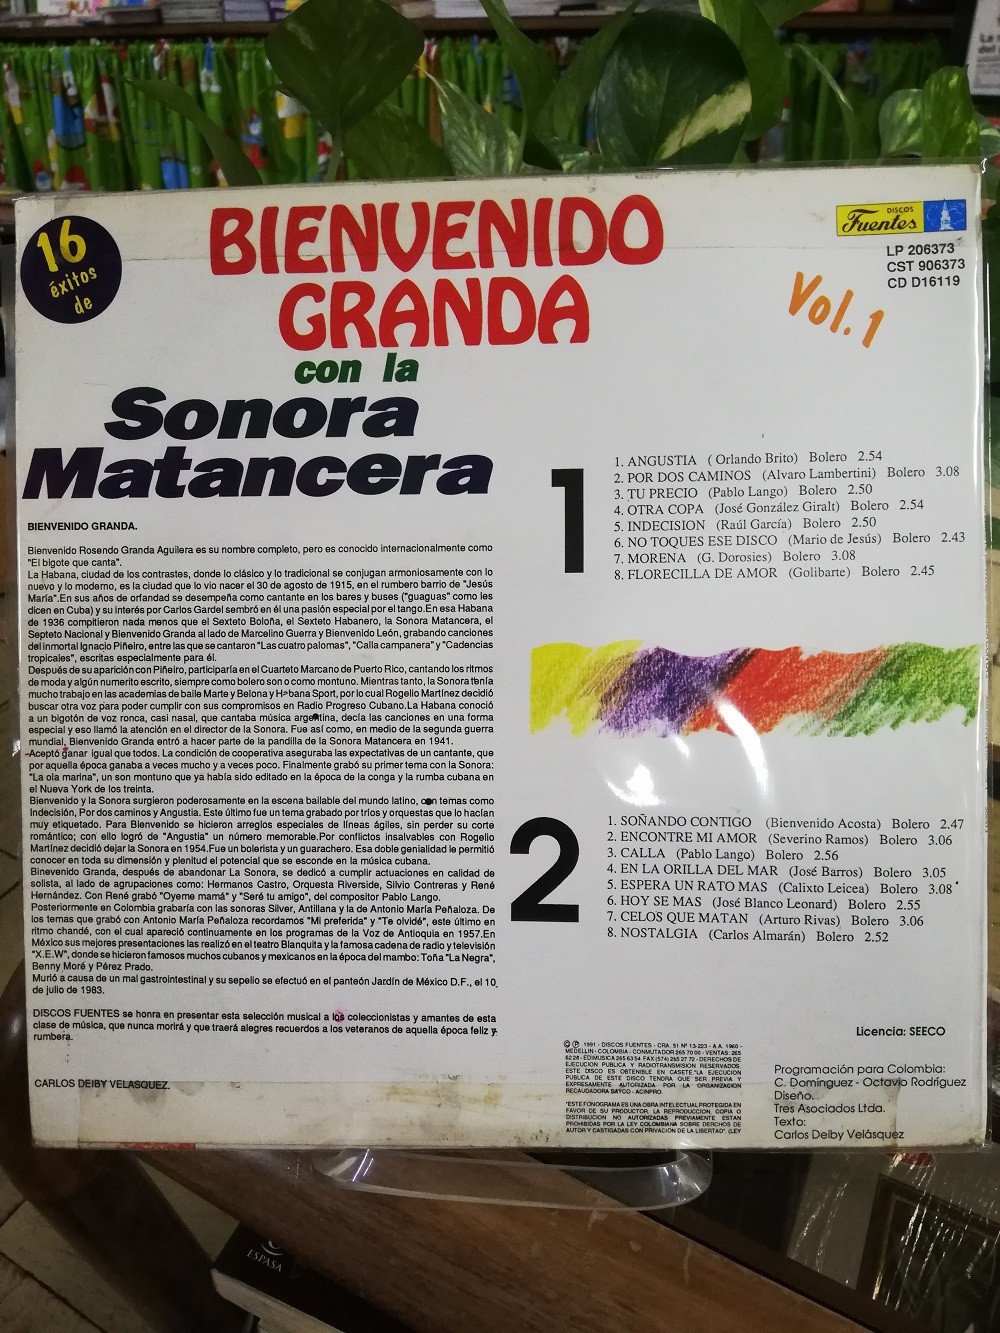 Imagen LP BIENVENIDO GRANDA - 16 EXITOS VOL. 1 2